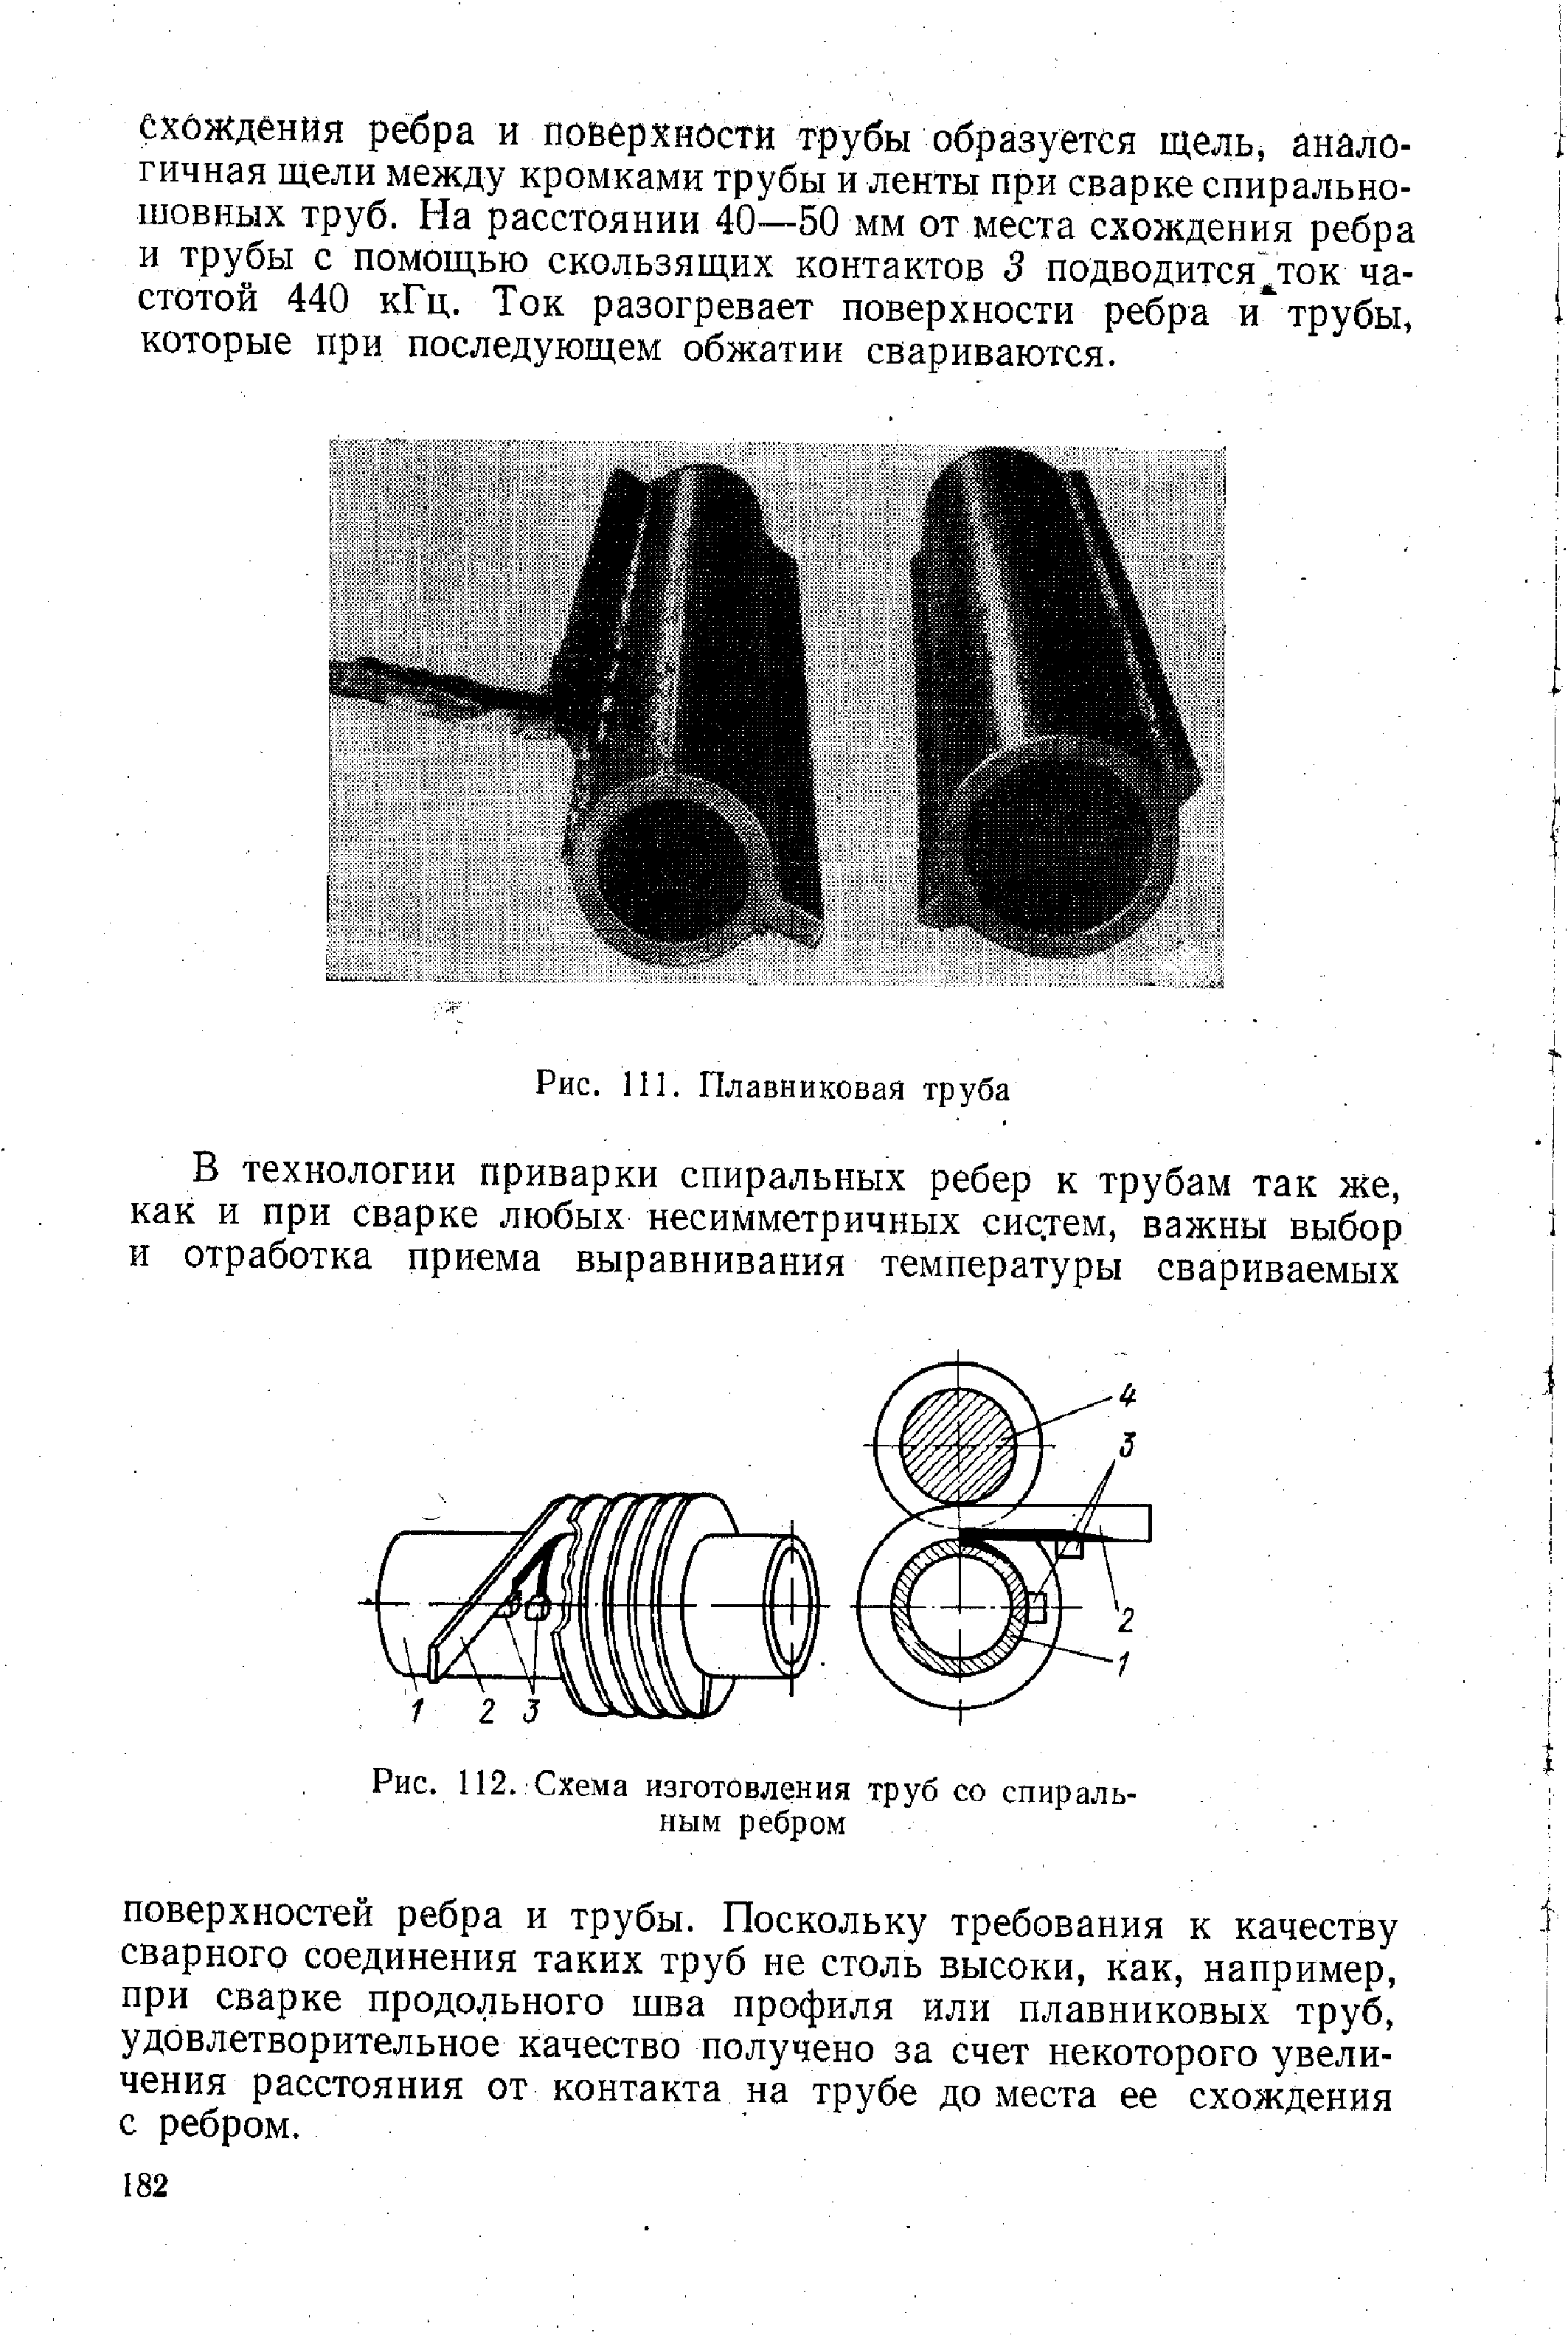 Рис. 112. Схема изготовления труб со спиральным ребром
